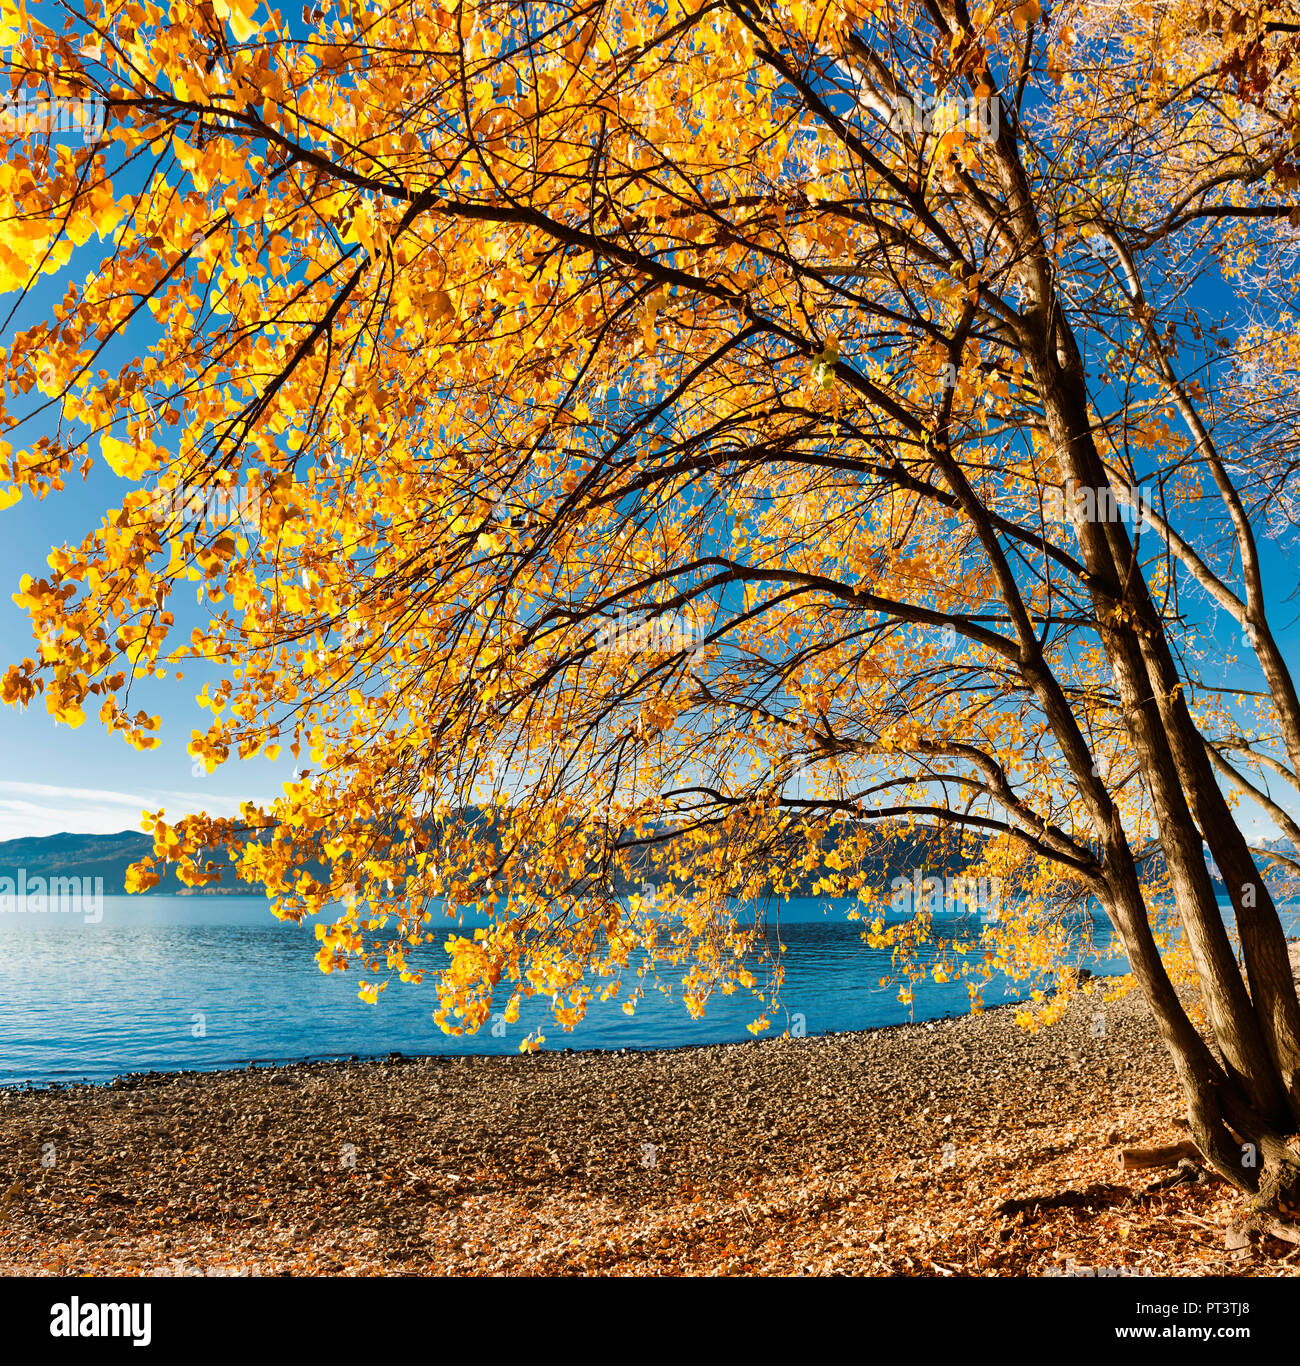 Arbre aux couleurs d'automne sur la plage du lac et ciel bleu en arrière-plan Banque D'Images